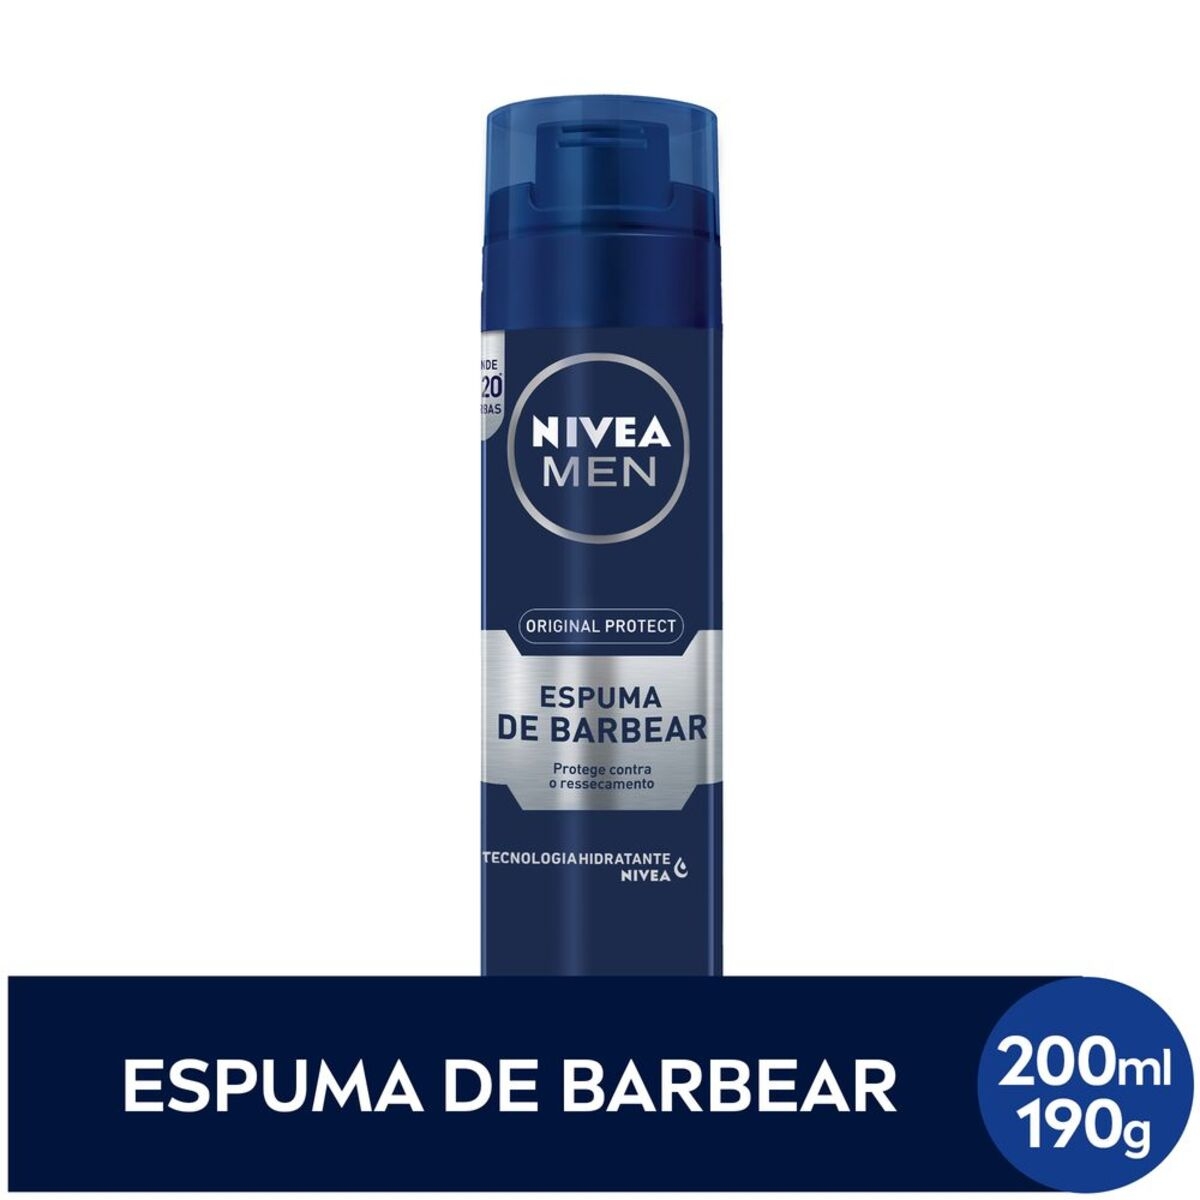 Espuma de Barbear Nivea Men Original Protect com 200ml